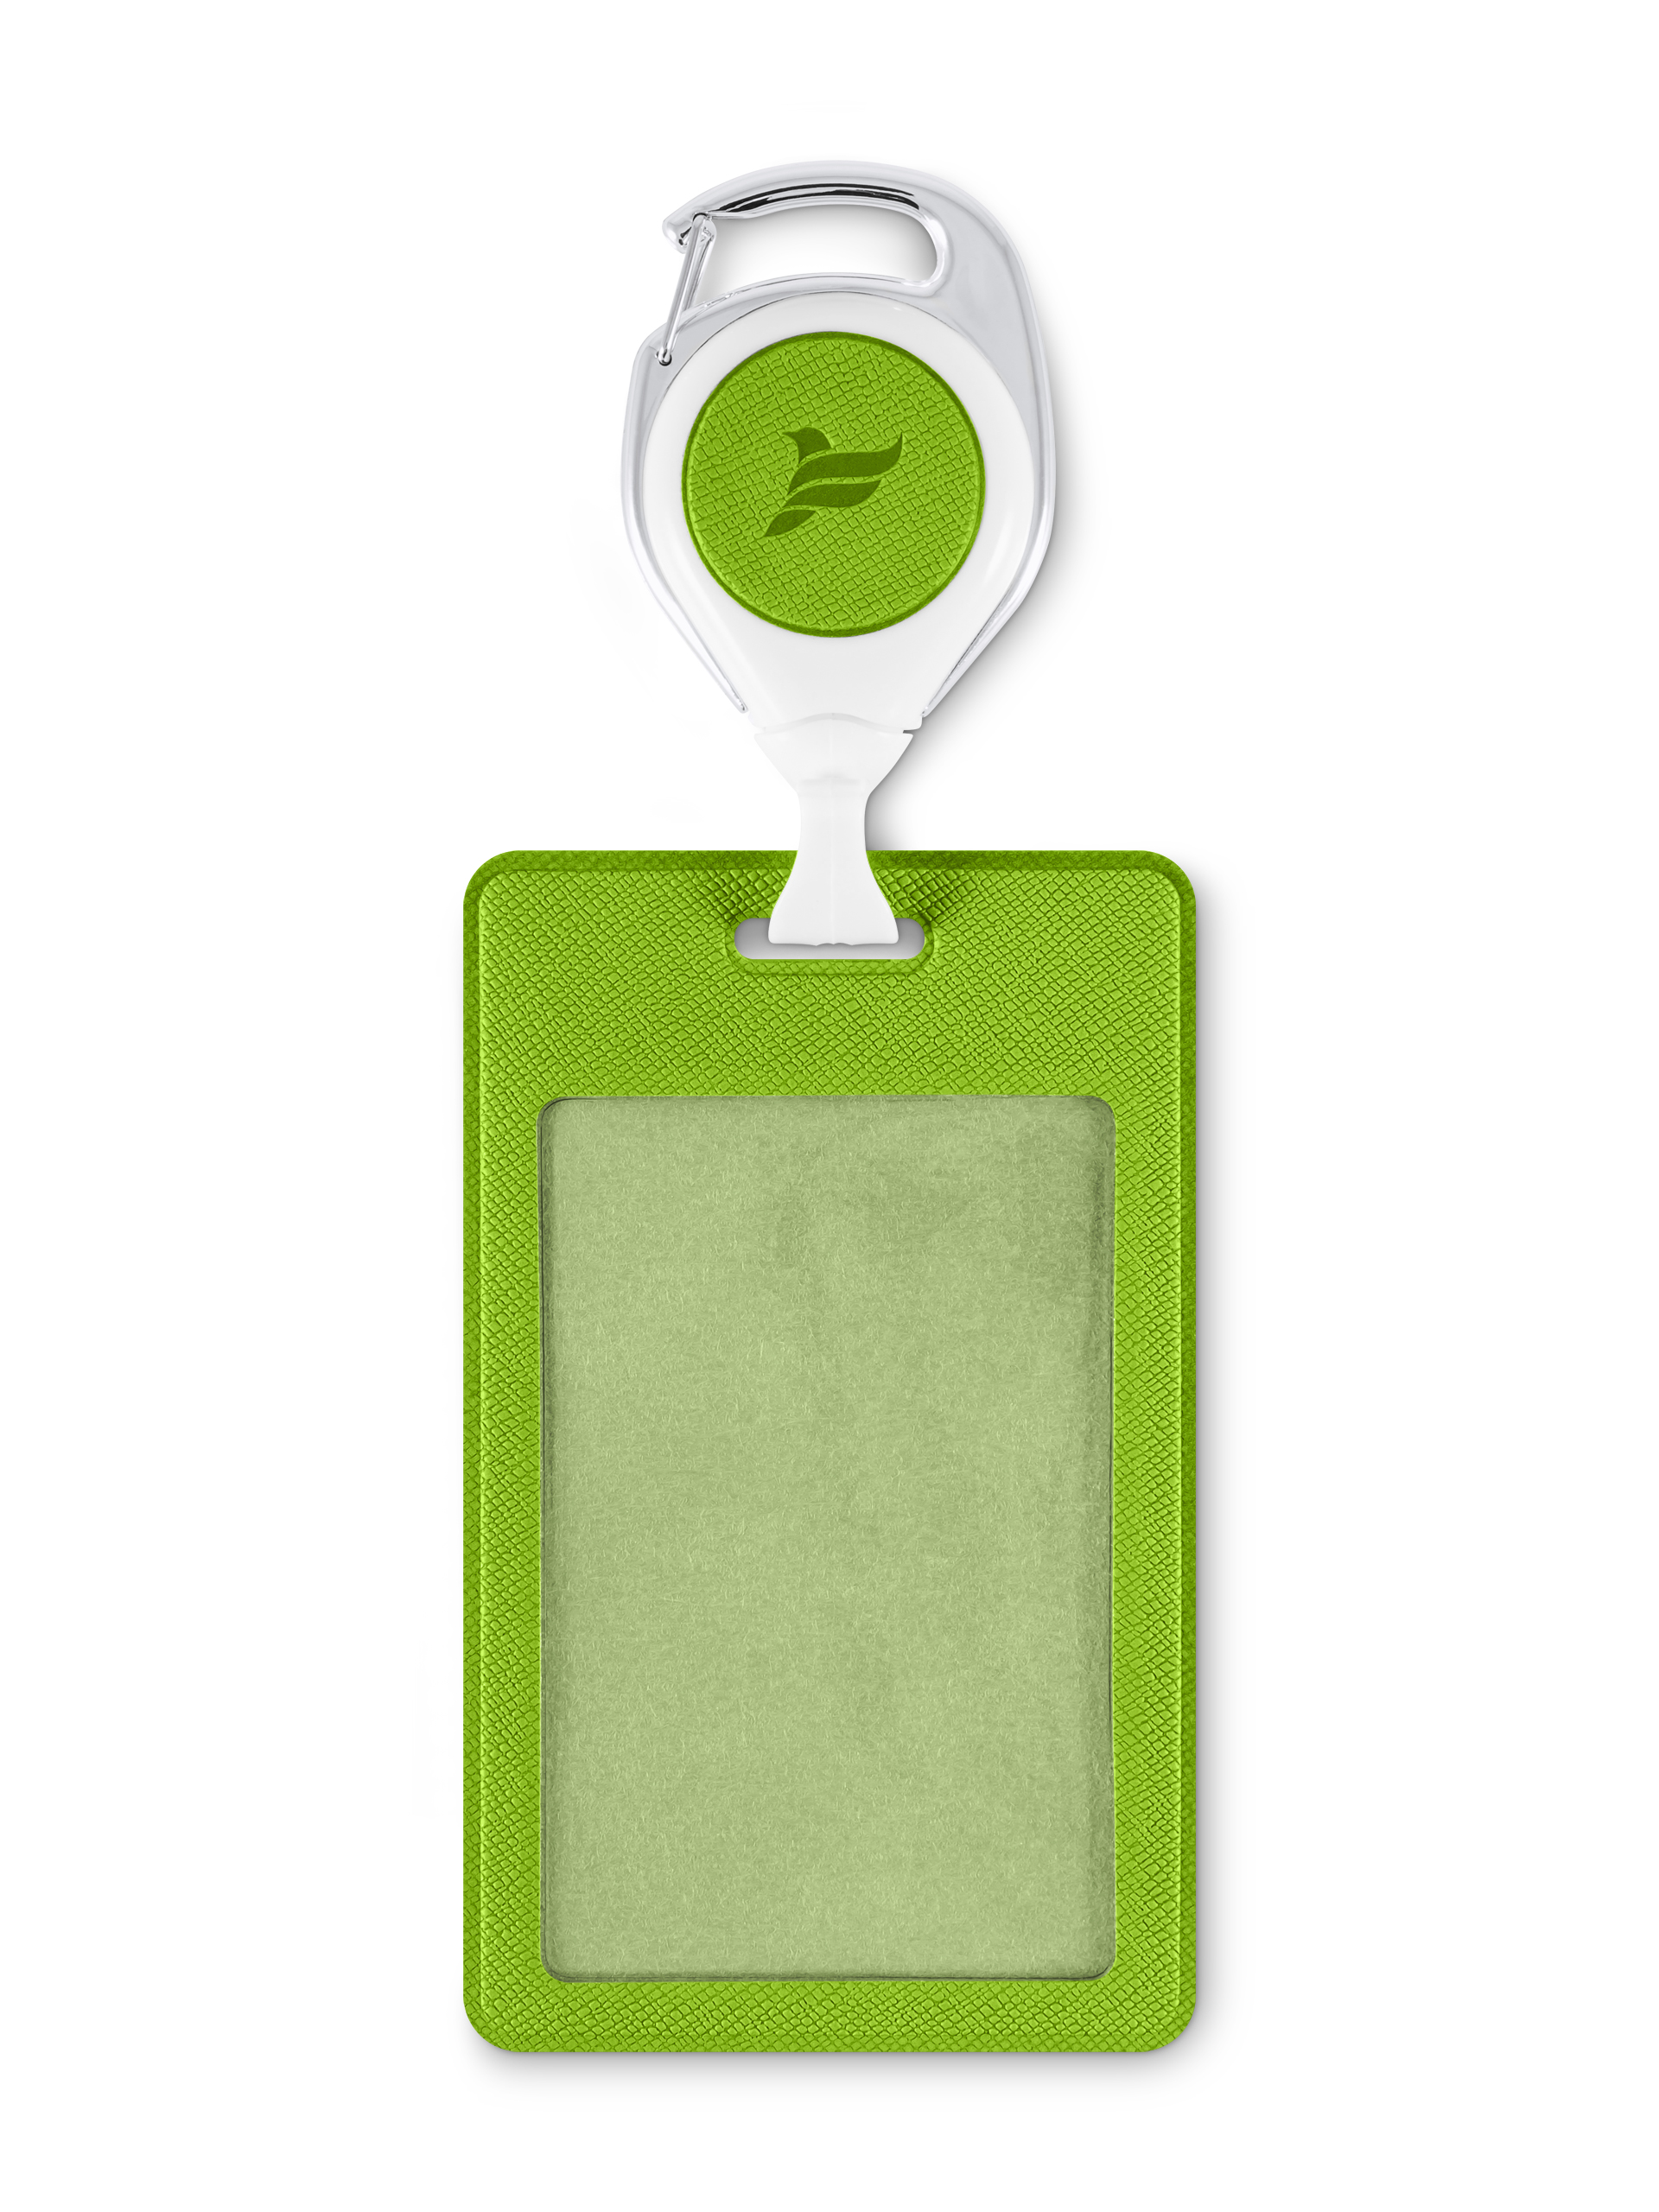 фото Flexpocket / держатель для пропуска, бейджа, чехол для карт доступа с рулеткой зеленый